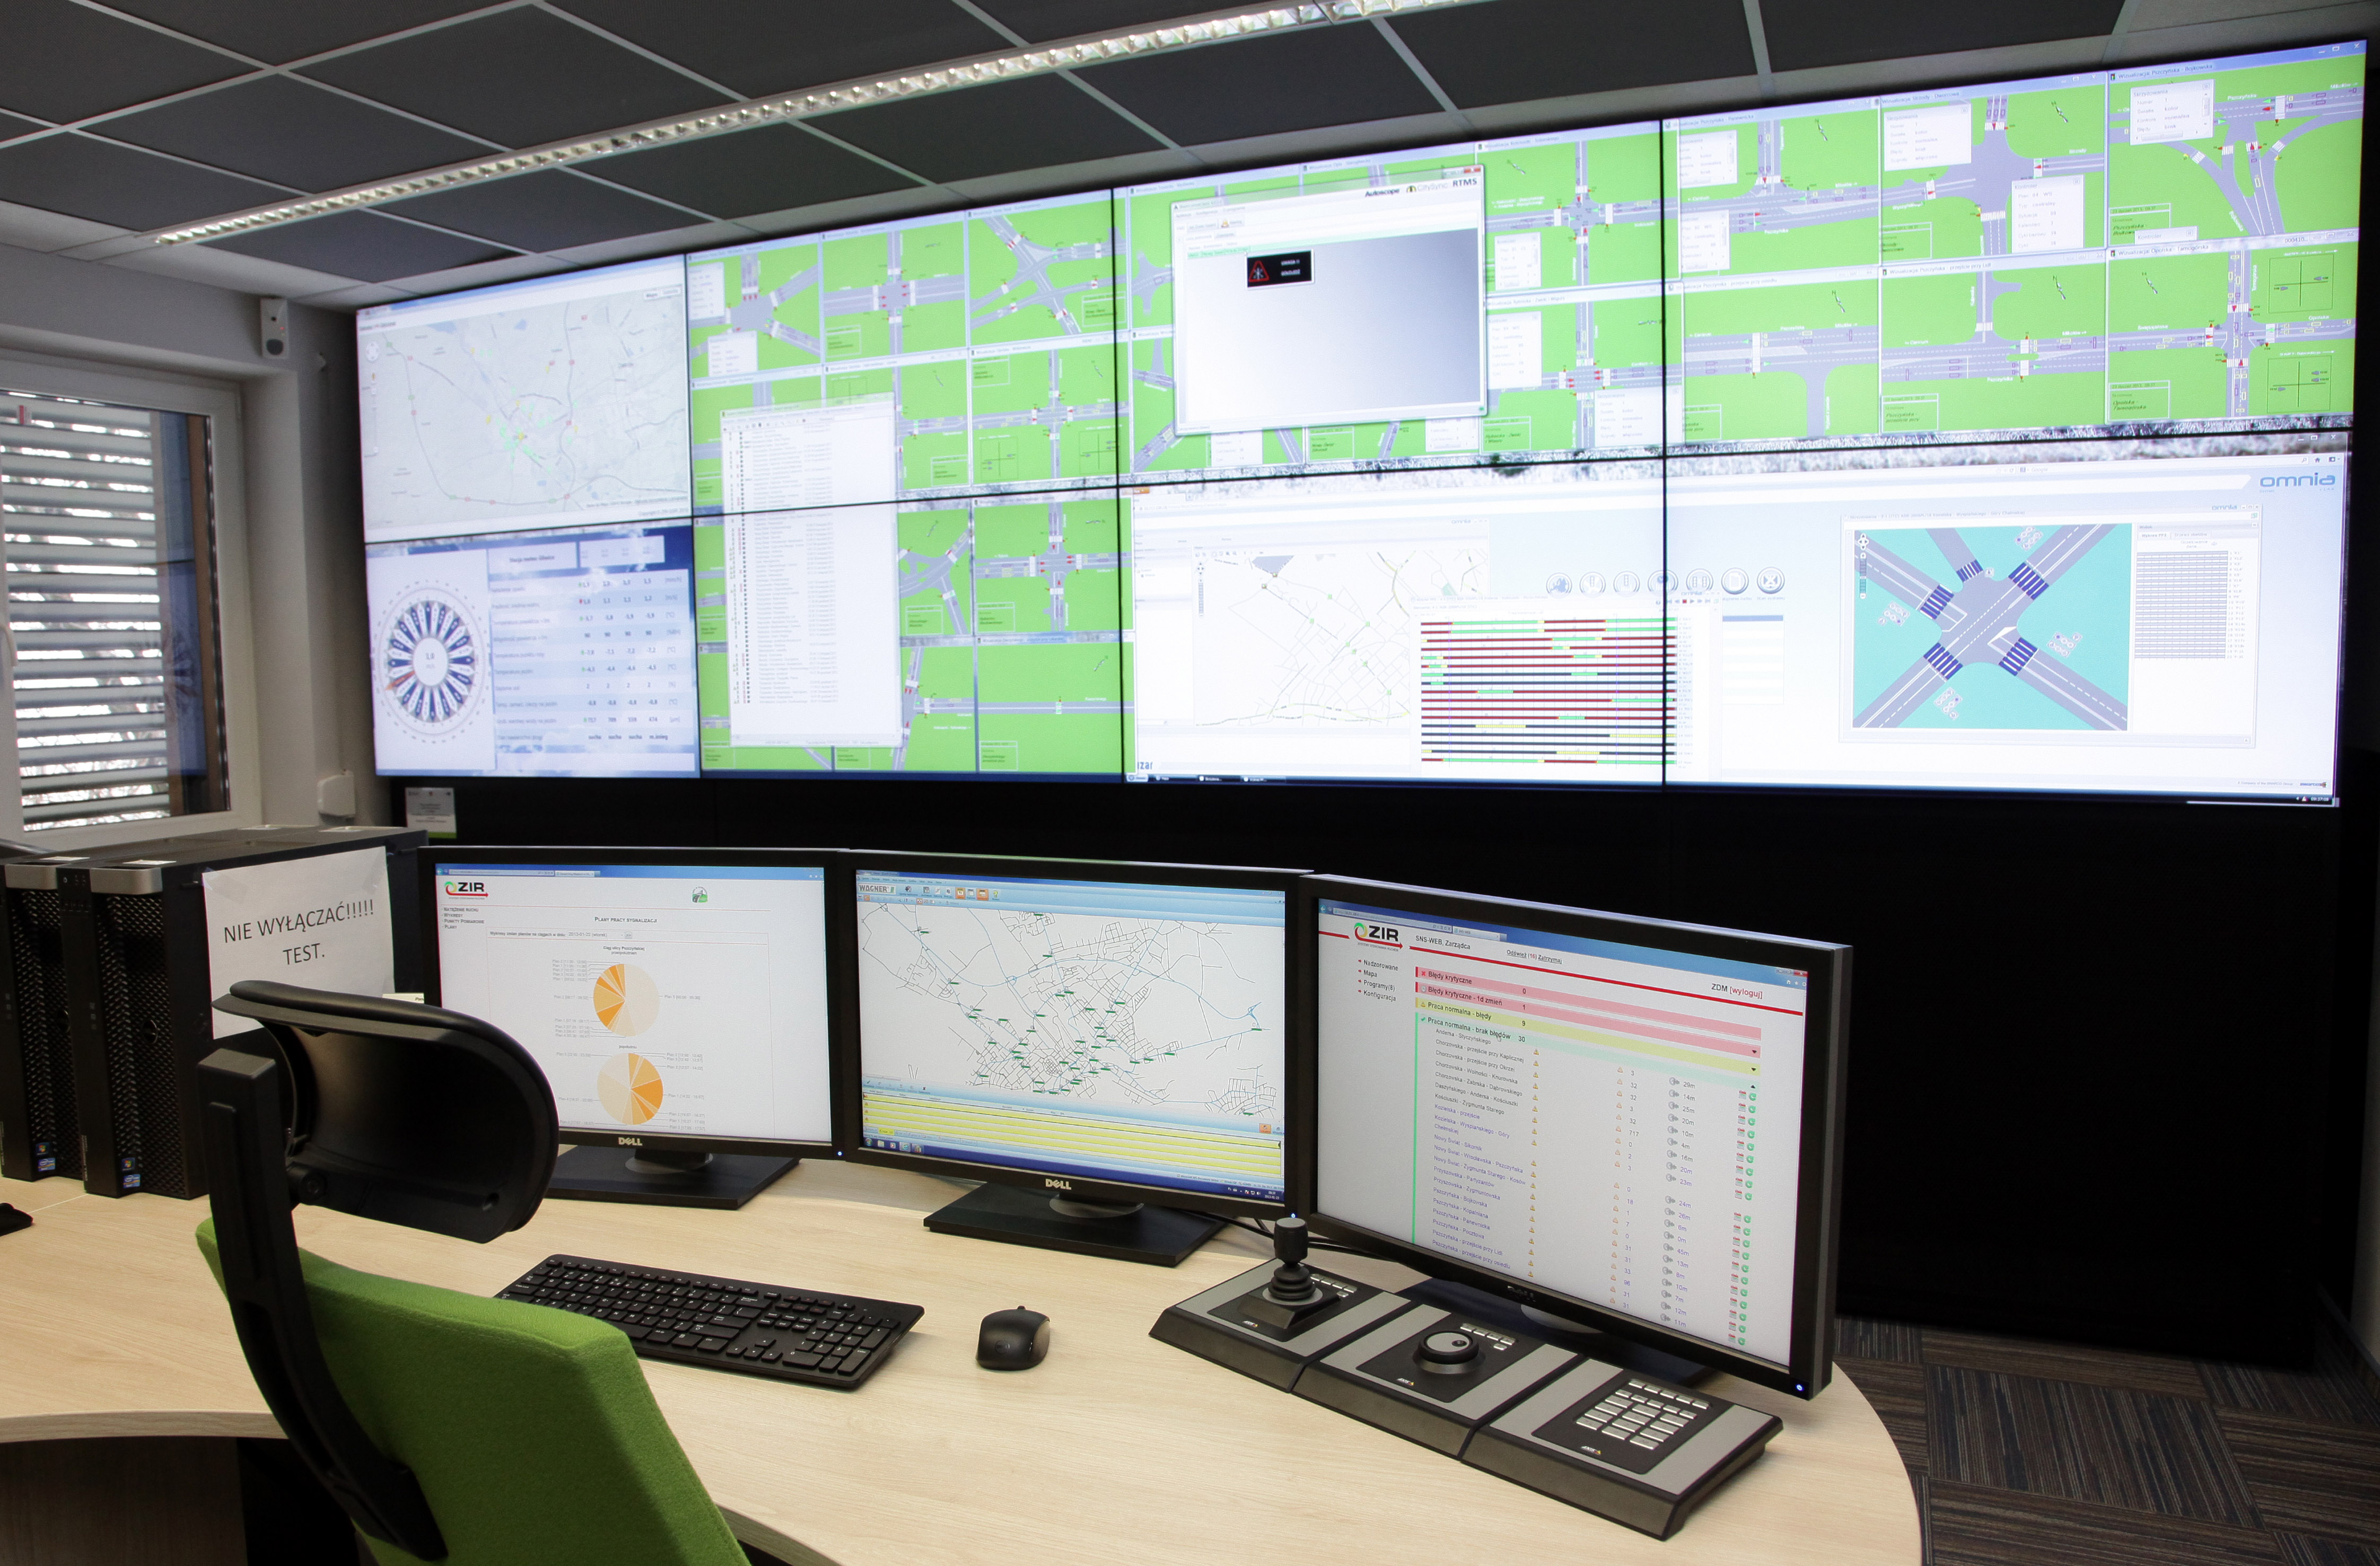 Rozbudowa systemu detekcji na terenie miasta Gliwice wraz z modernizacją wybranych sygnalizacji świetlnych, etap II